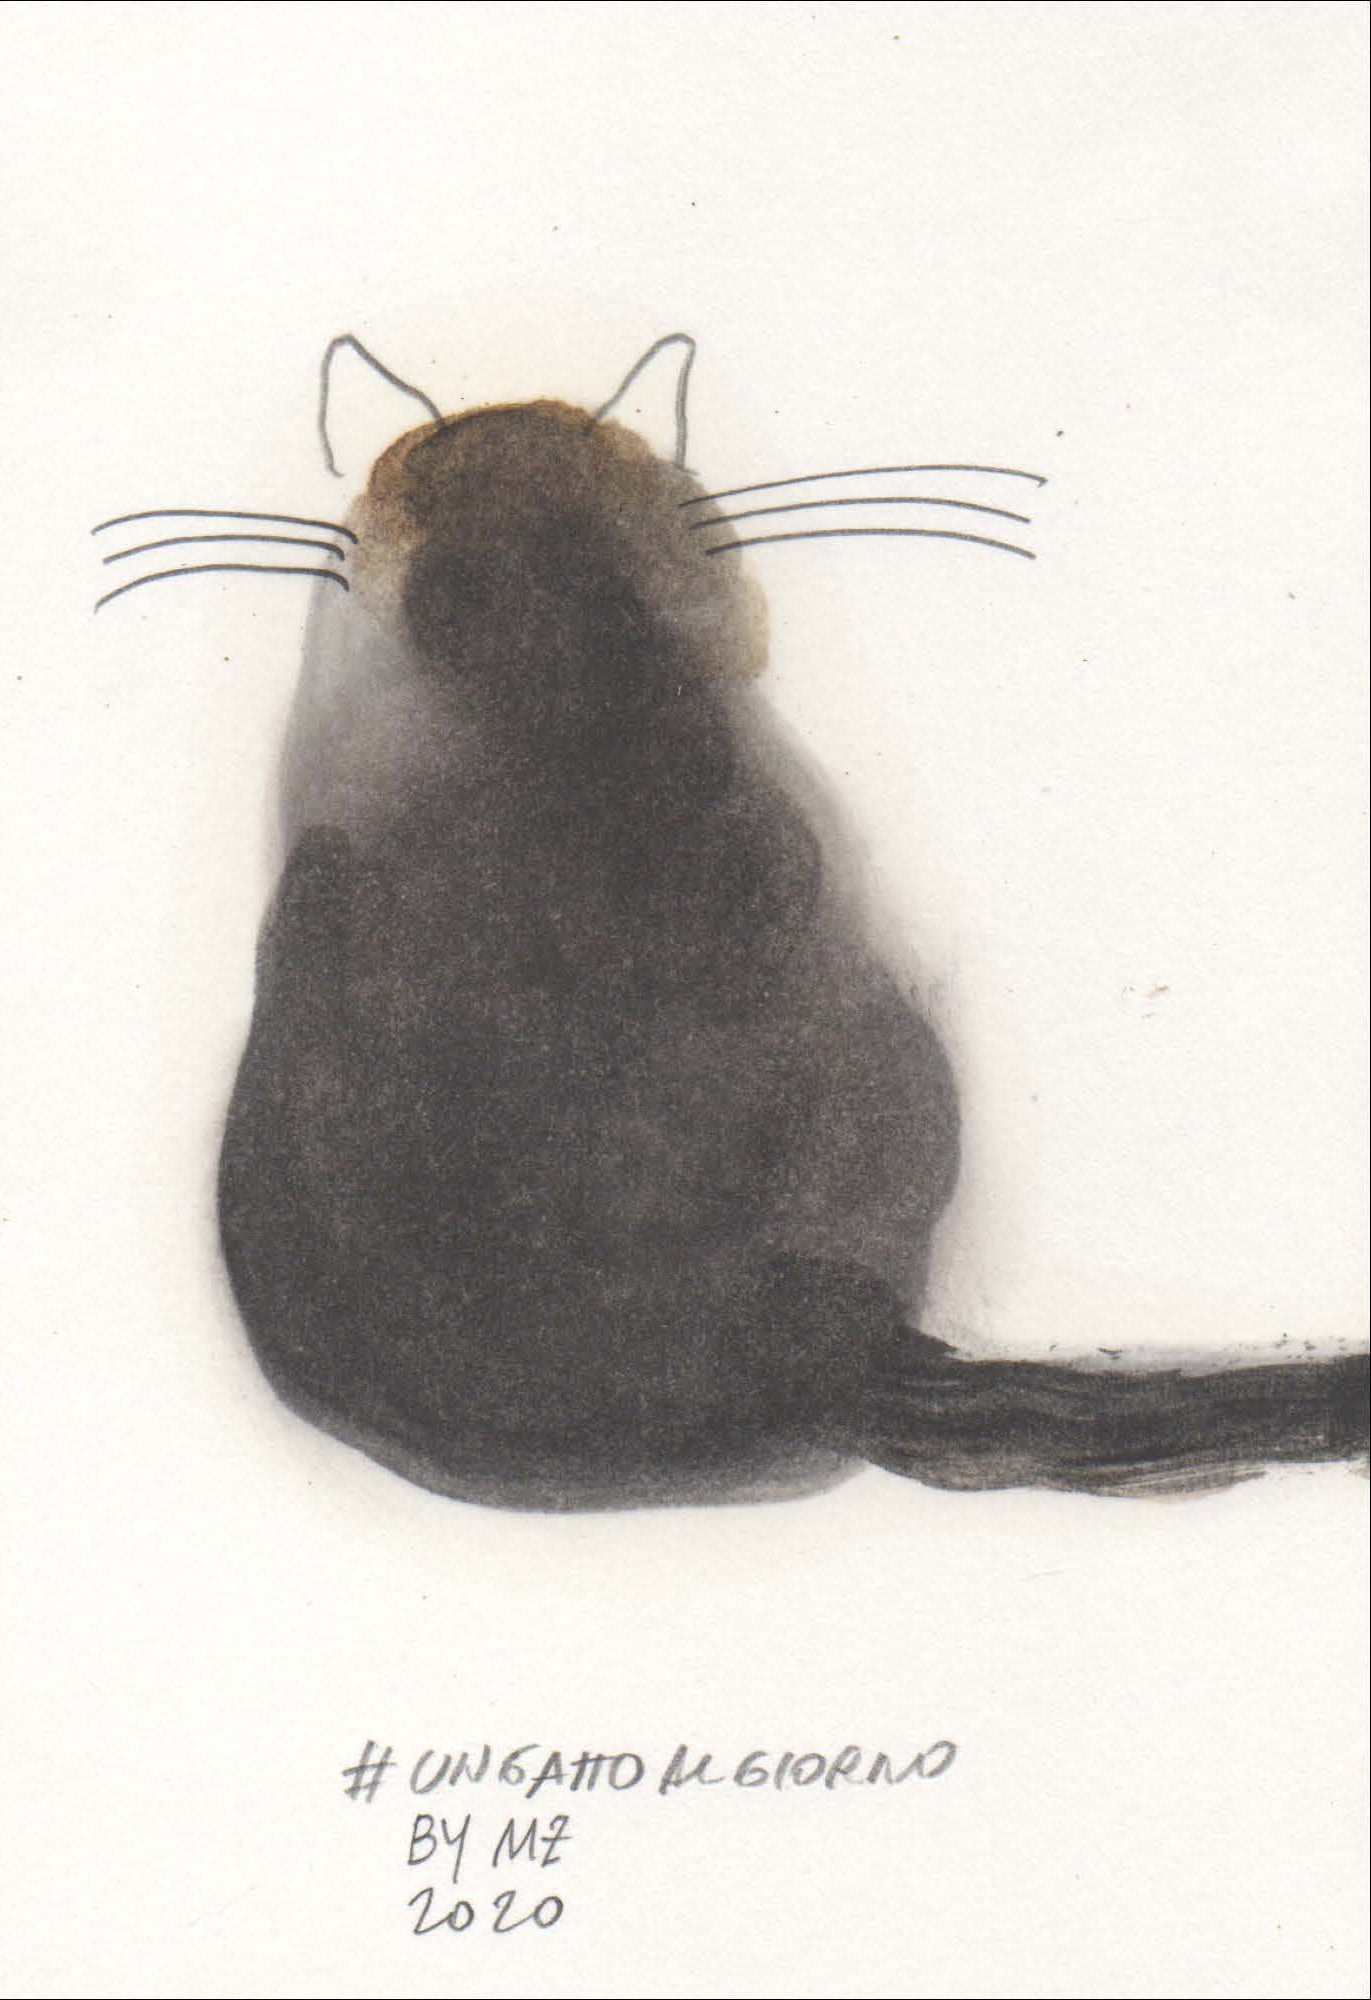 Dipinto di un gatto calico di spalle